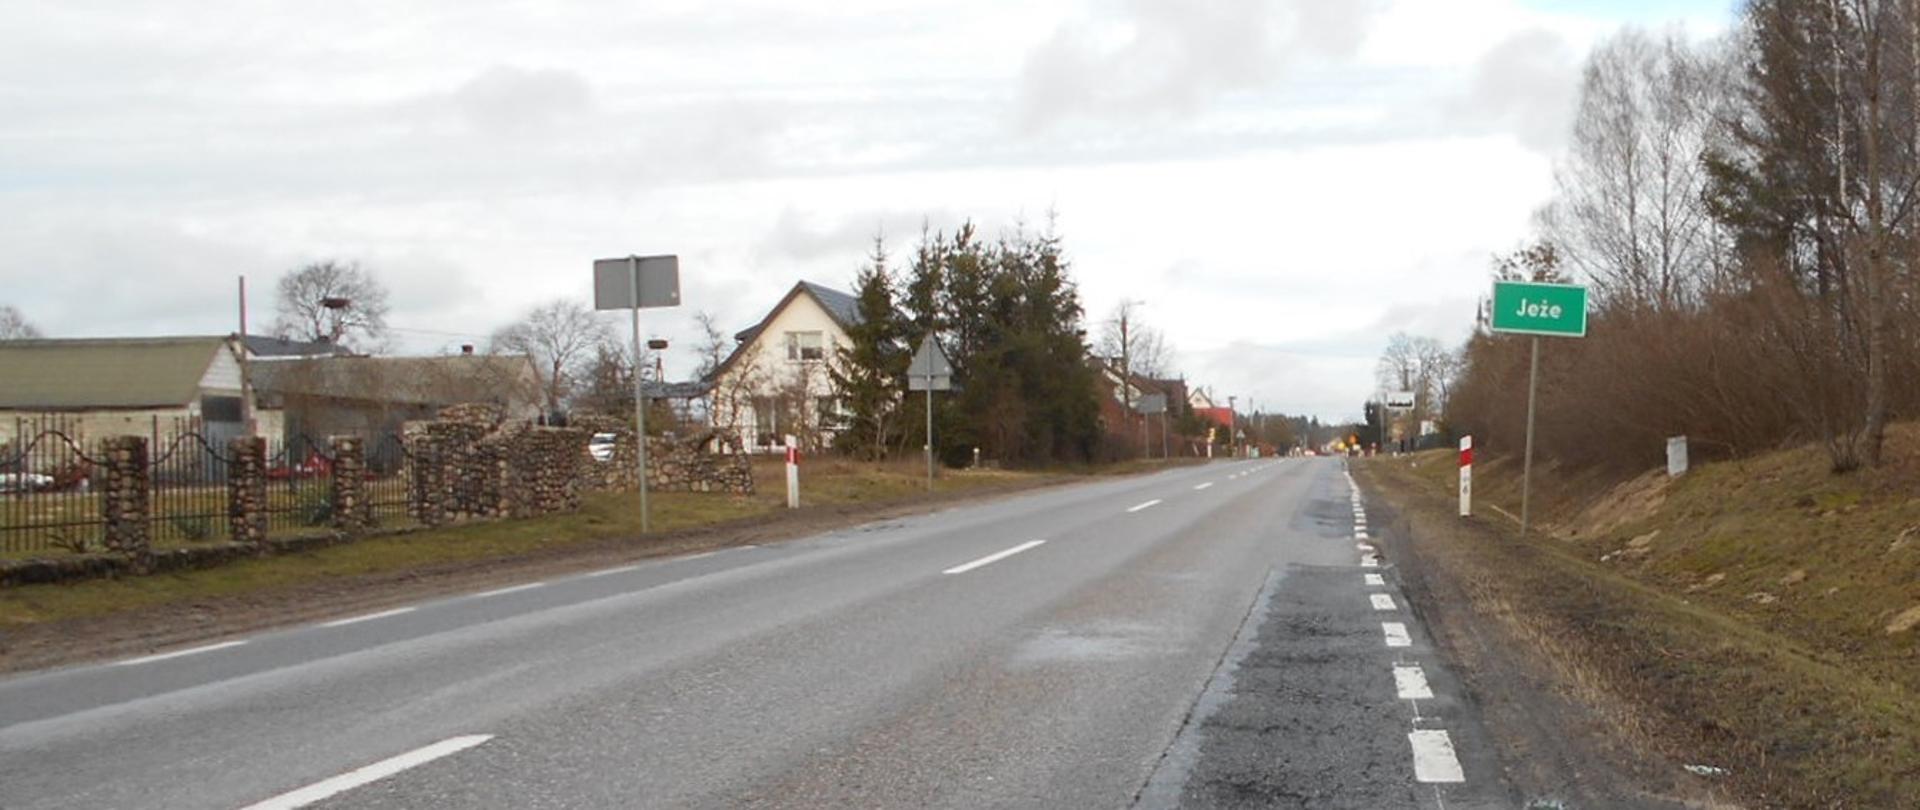 DK63 Borki - Jeże. Wjazd do miejscowości Jeże. Po lewej stronie drogi zabudowania, po prawe znak z nazwą miejscowości.